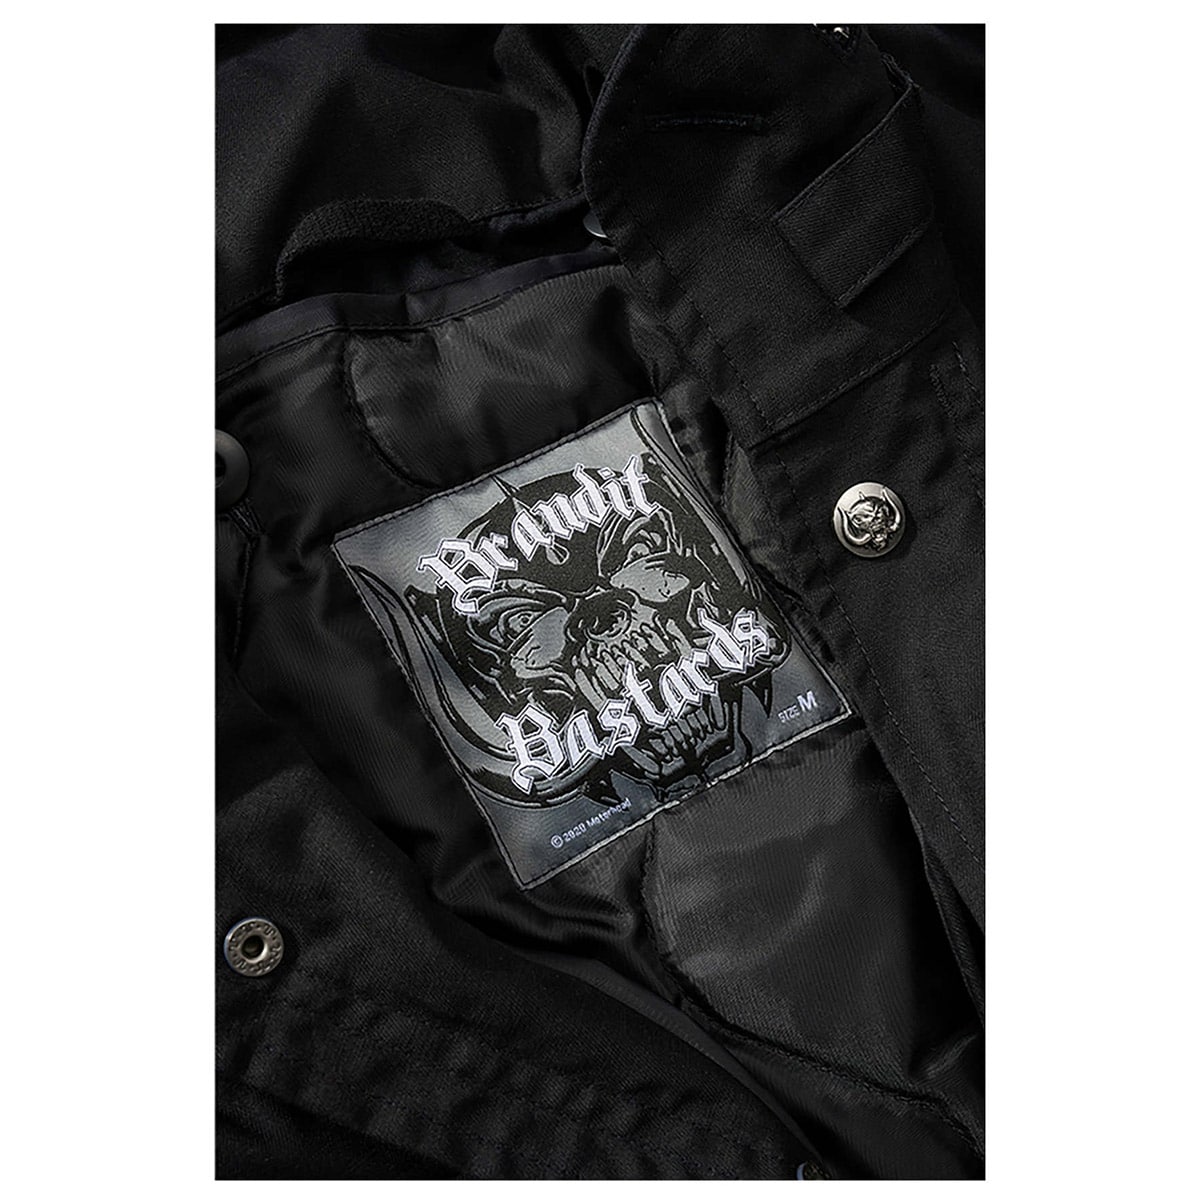 Куртка Brandit M65 Classic Motorhead Black